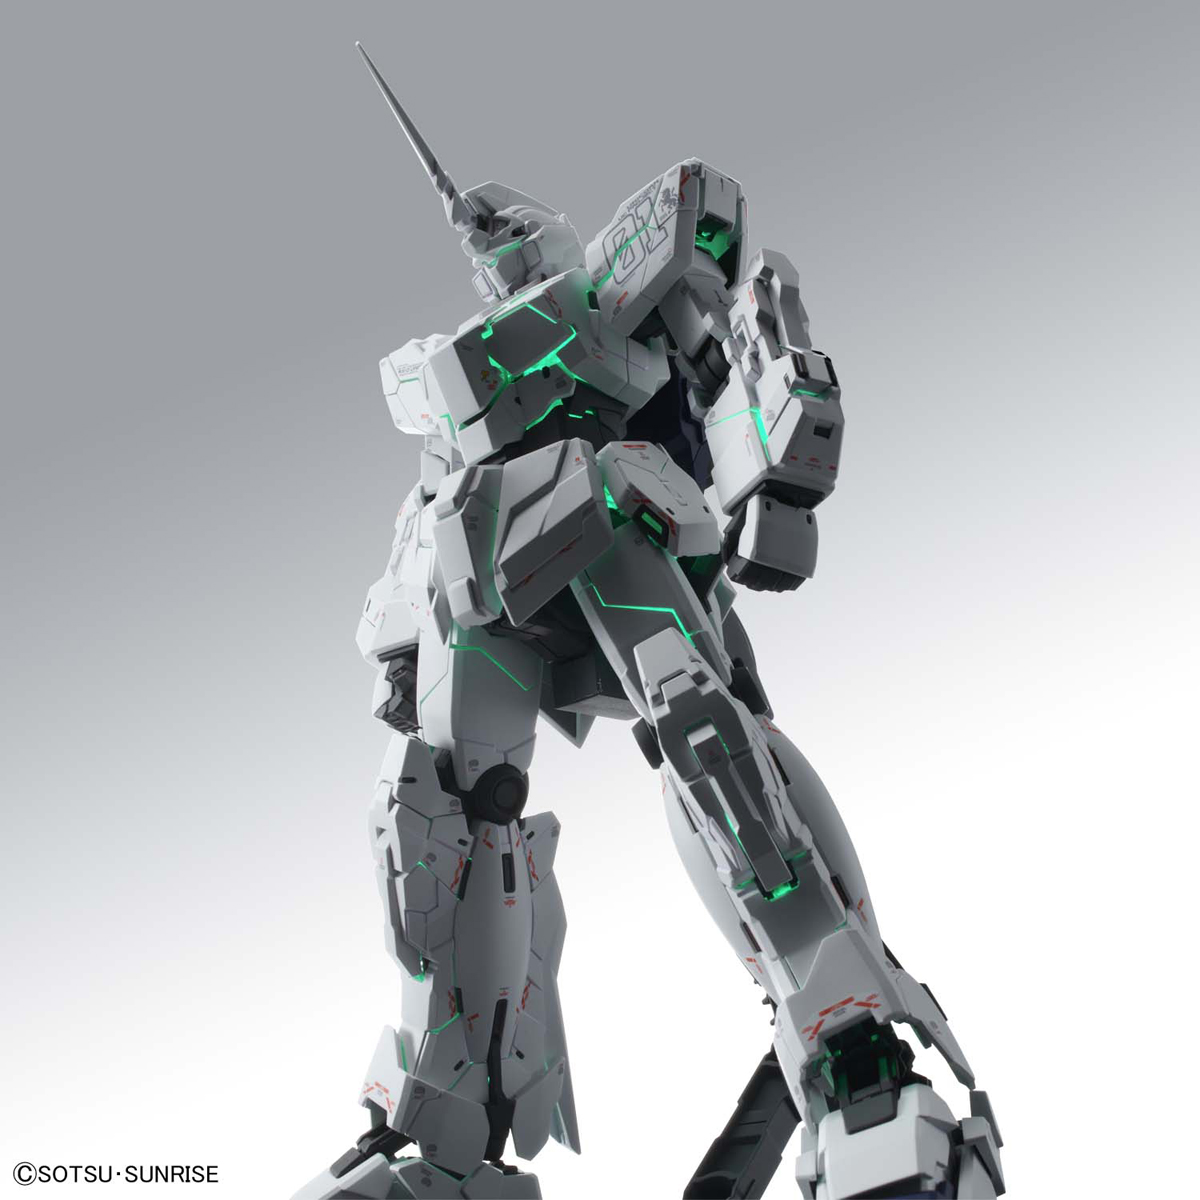 MGEX Unicorn Gundam Ver. Ka (Premium “Unicorn Mode” Box)